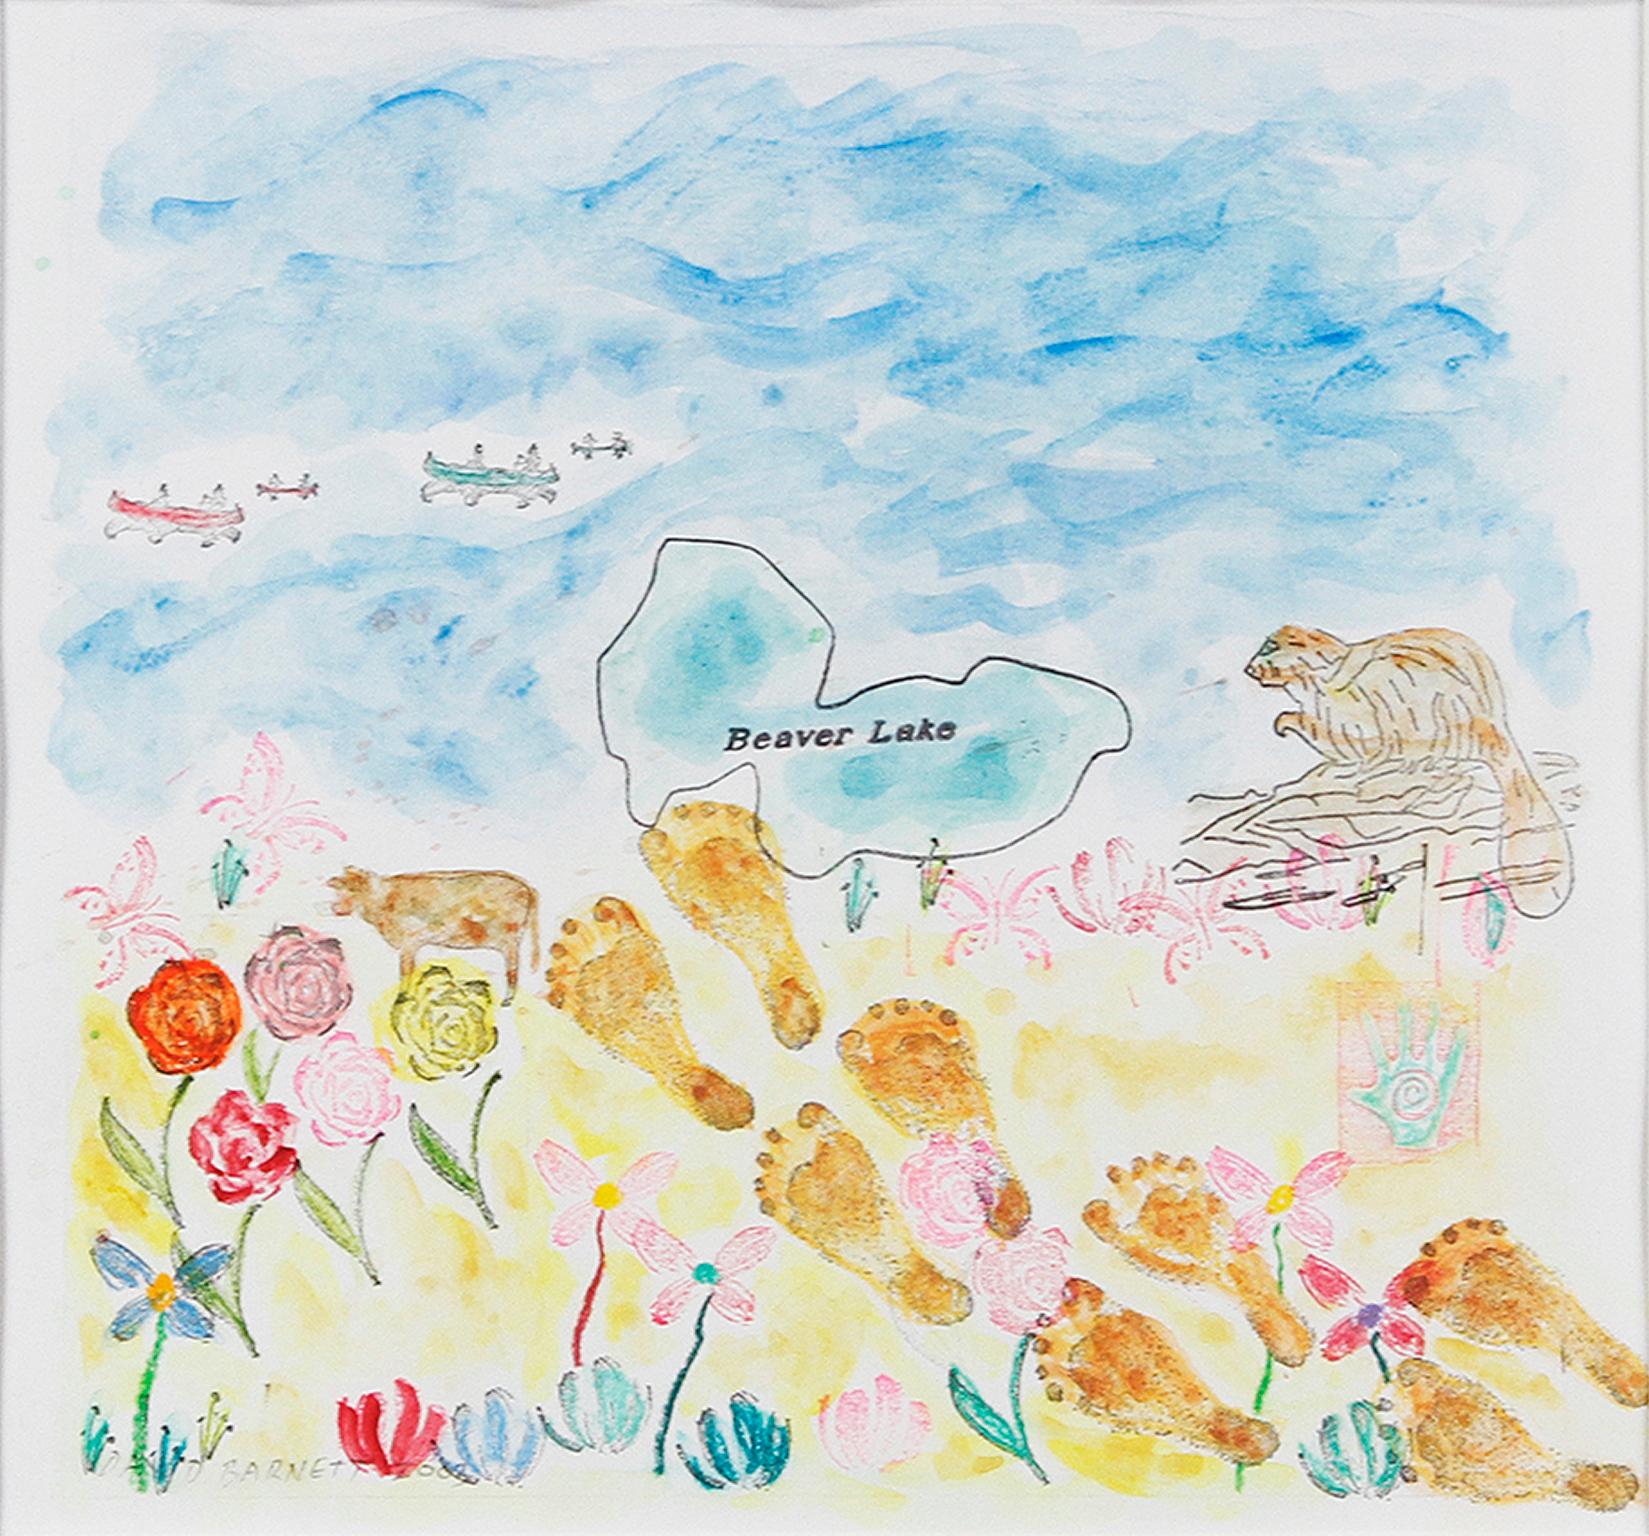 "For Beaver Lake Yacht Club Dinghy" ist ein Original-Aquarell von David Barnett, signiert unten links. Dieses Stück wurde 2003 für die Jollenabdeckung des Yachtclubs entworfen. Das Werk zeigt ein mit Blumen übersätes Seeufer und Fußabdrücke im Sand.